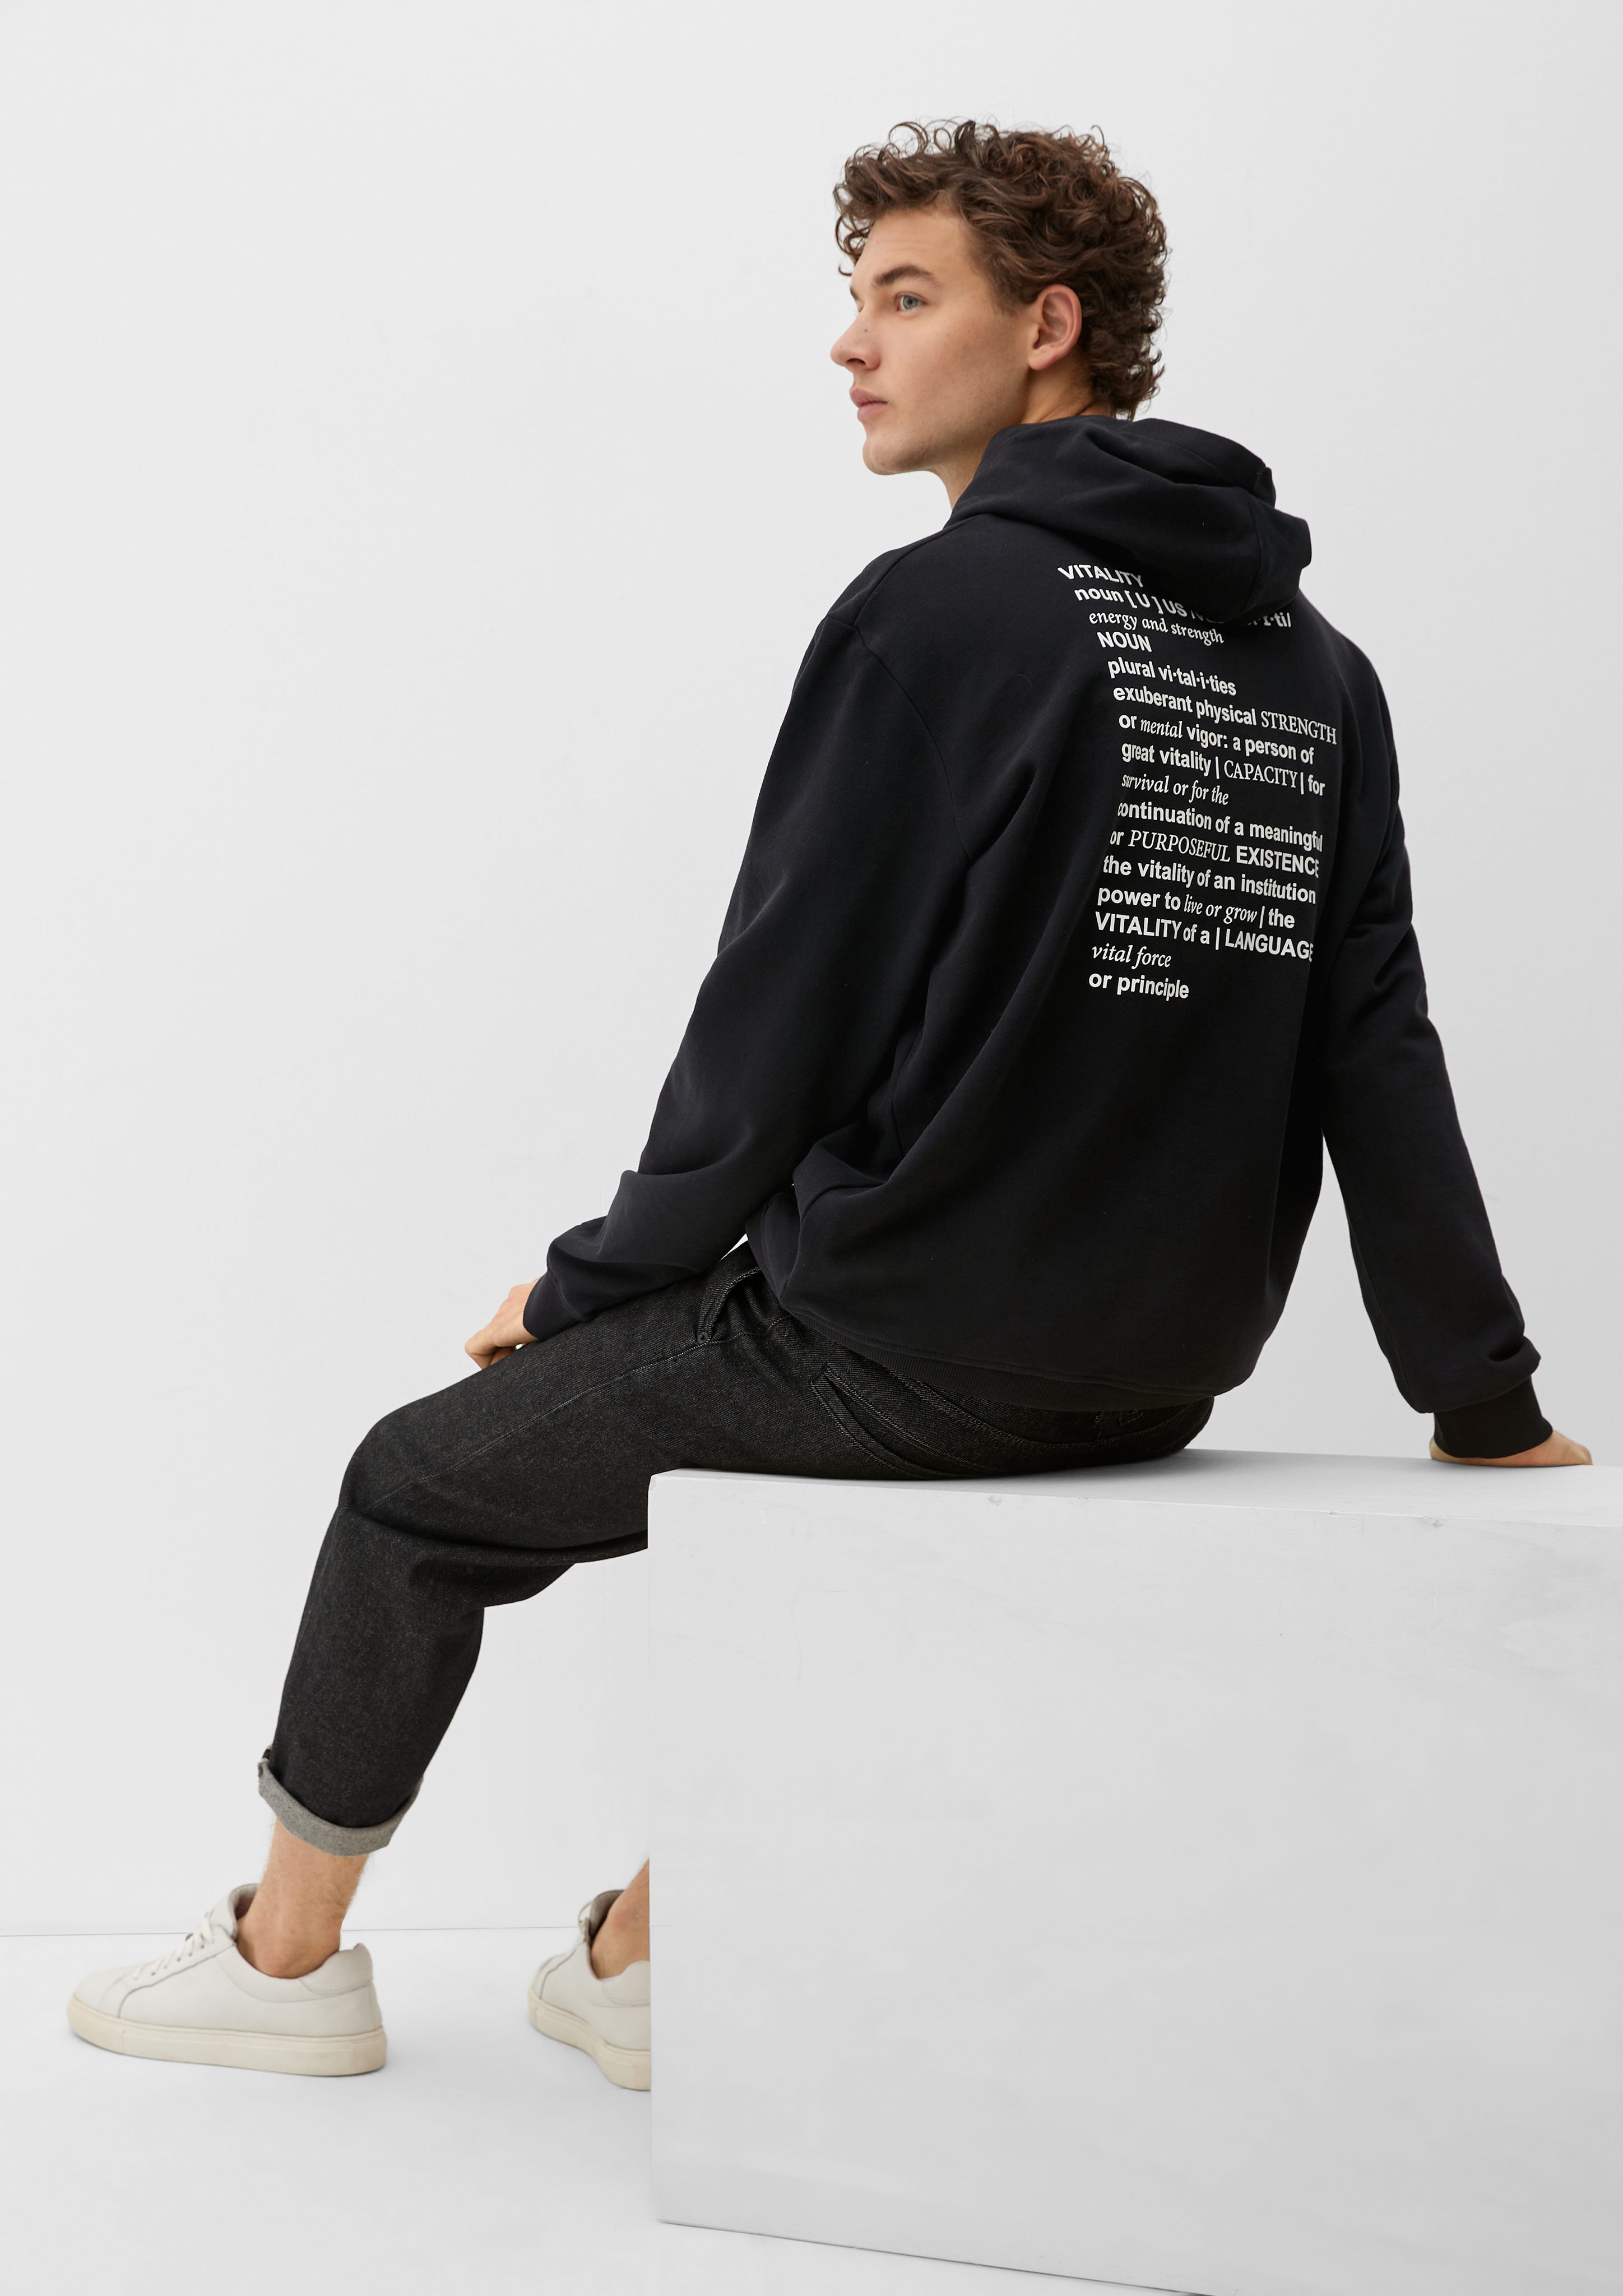 s.Oliver Sweatshirt Hoodie mit gummiertem Print Garment Dye, Artwork, Blende schwarz